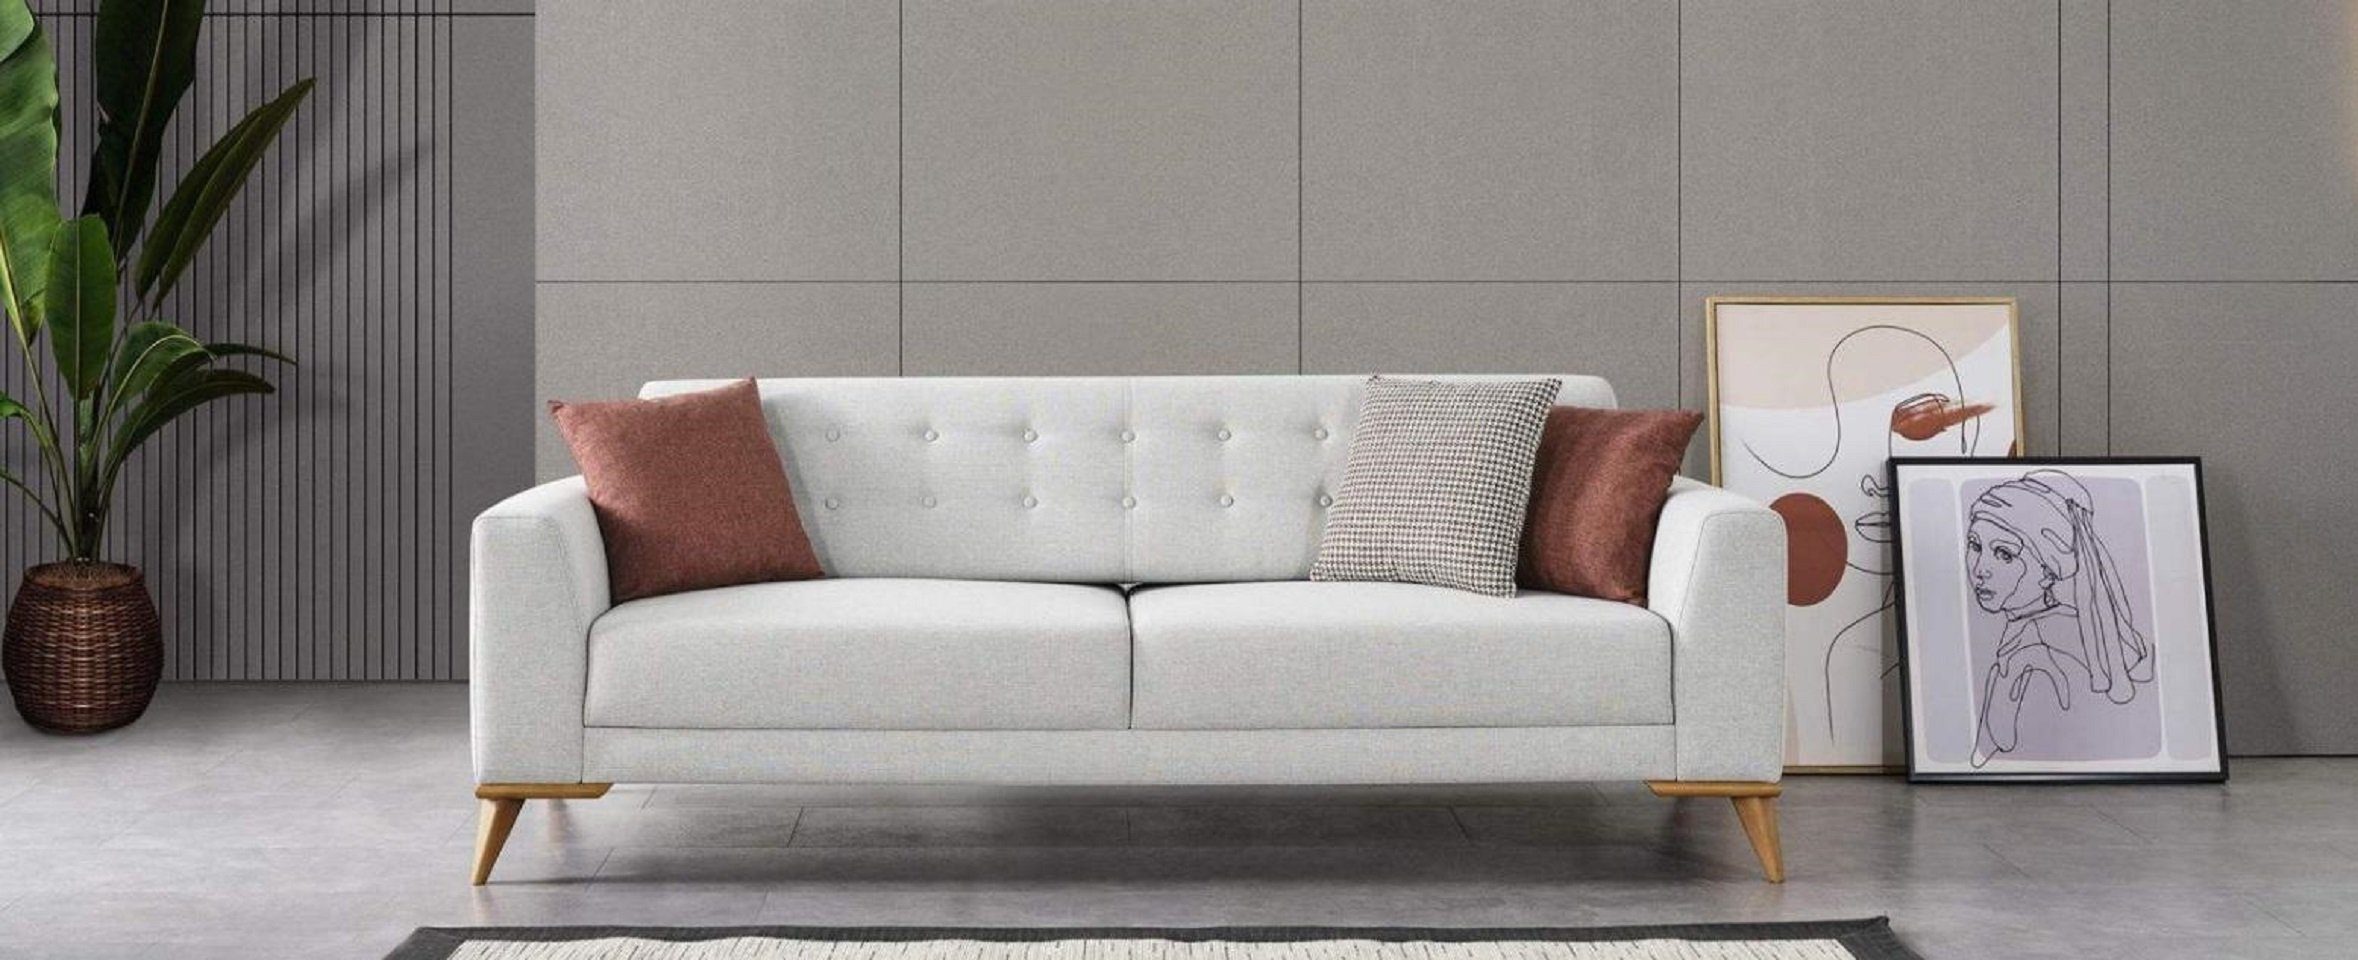 Sofa Möbel 1 Dreisitzer 3-Sitzer Europe Made Stilvoll Couch, Luxus JVmoebel Sitzer in Design Teile, 3 Wohnzimmer